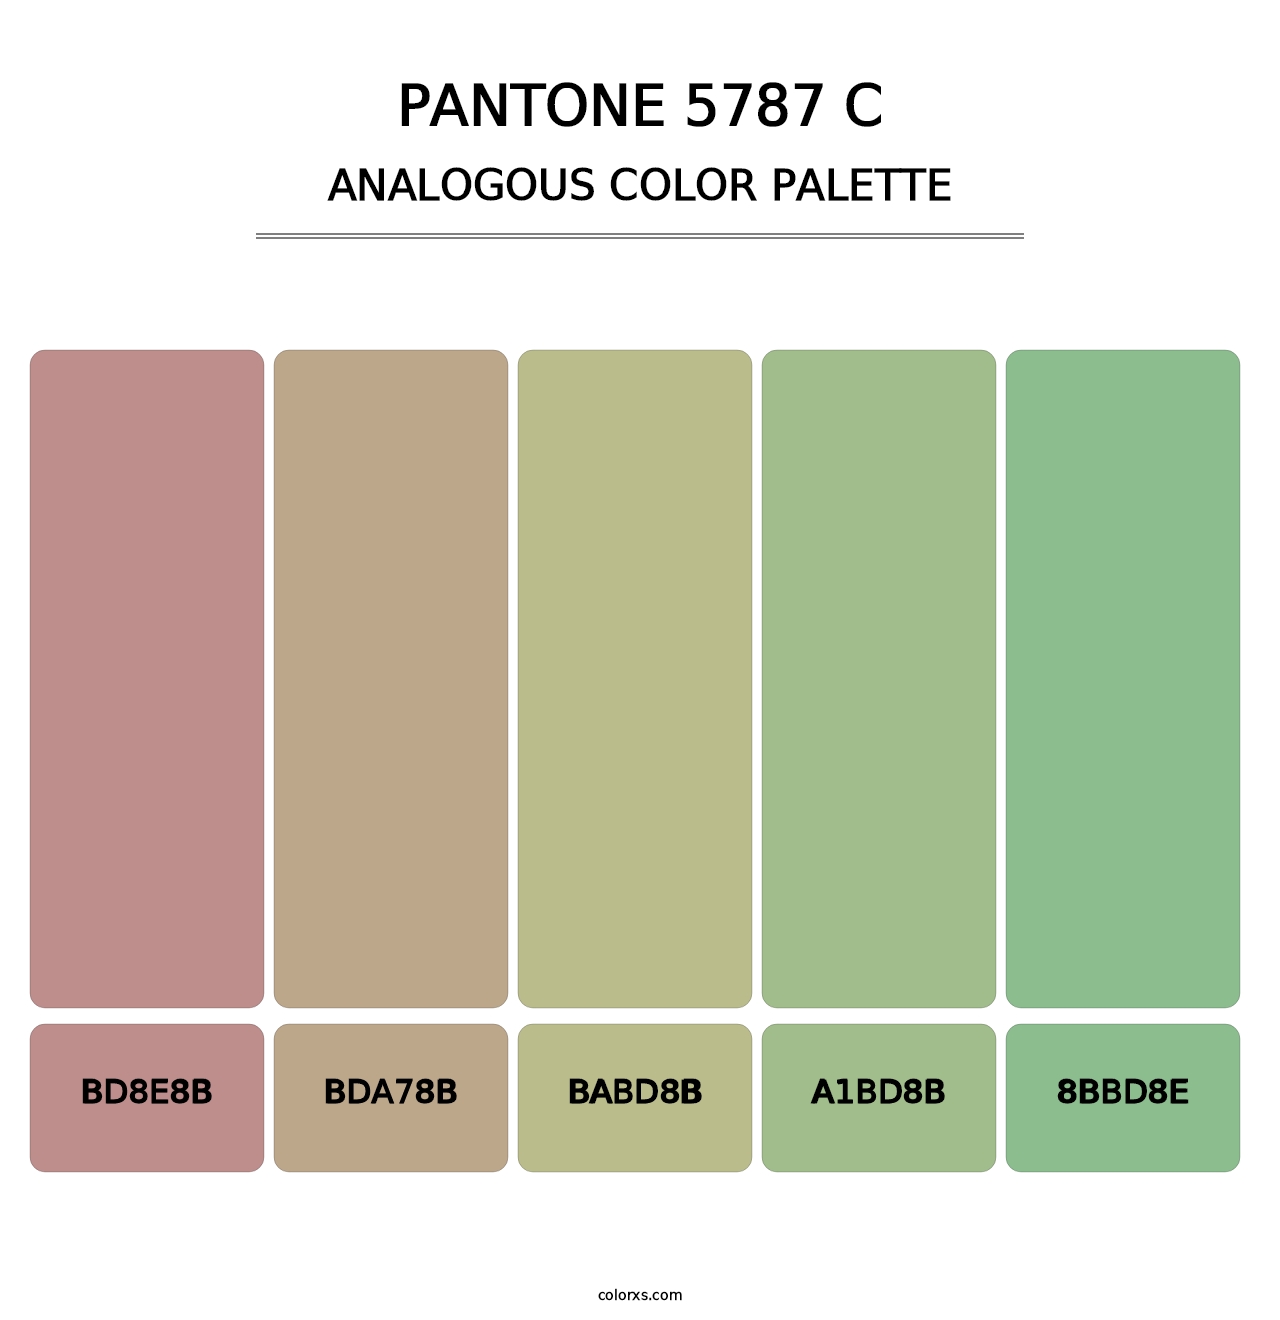 PANTONE 5787 C - Analogous Color Palette